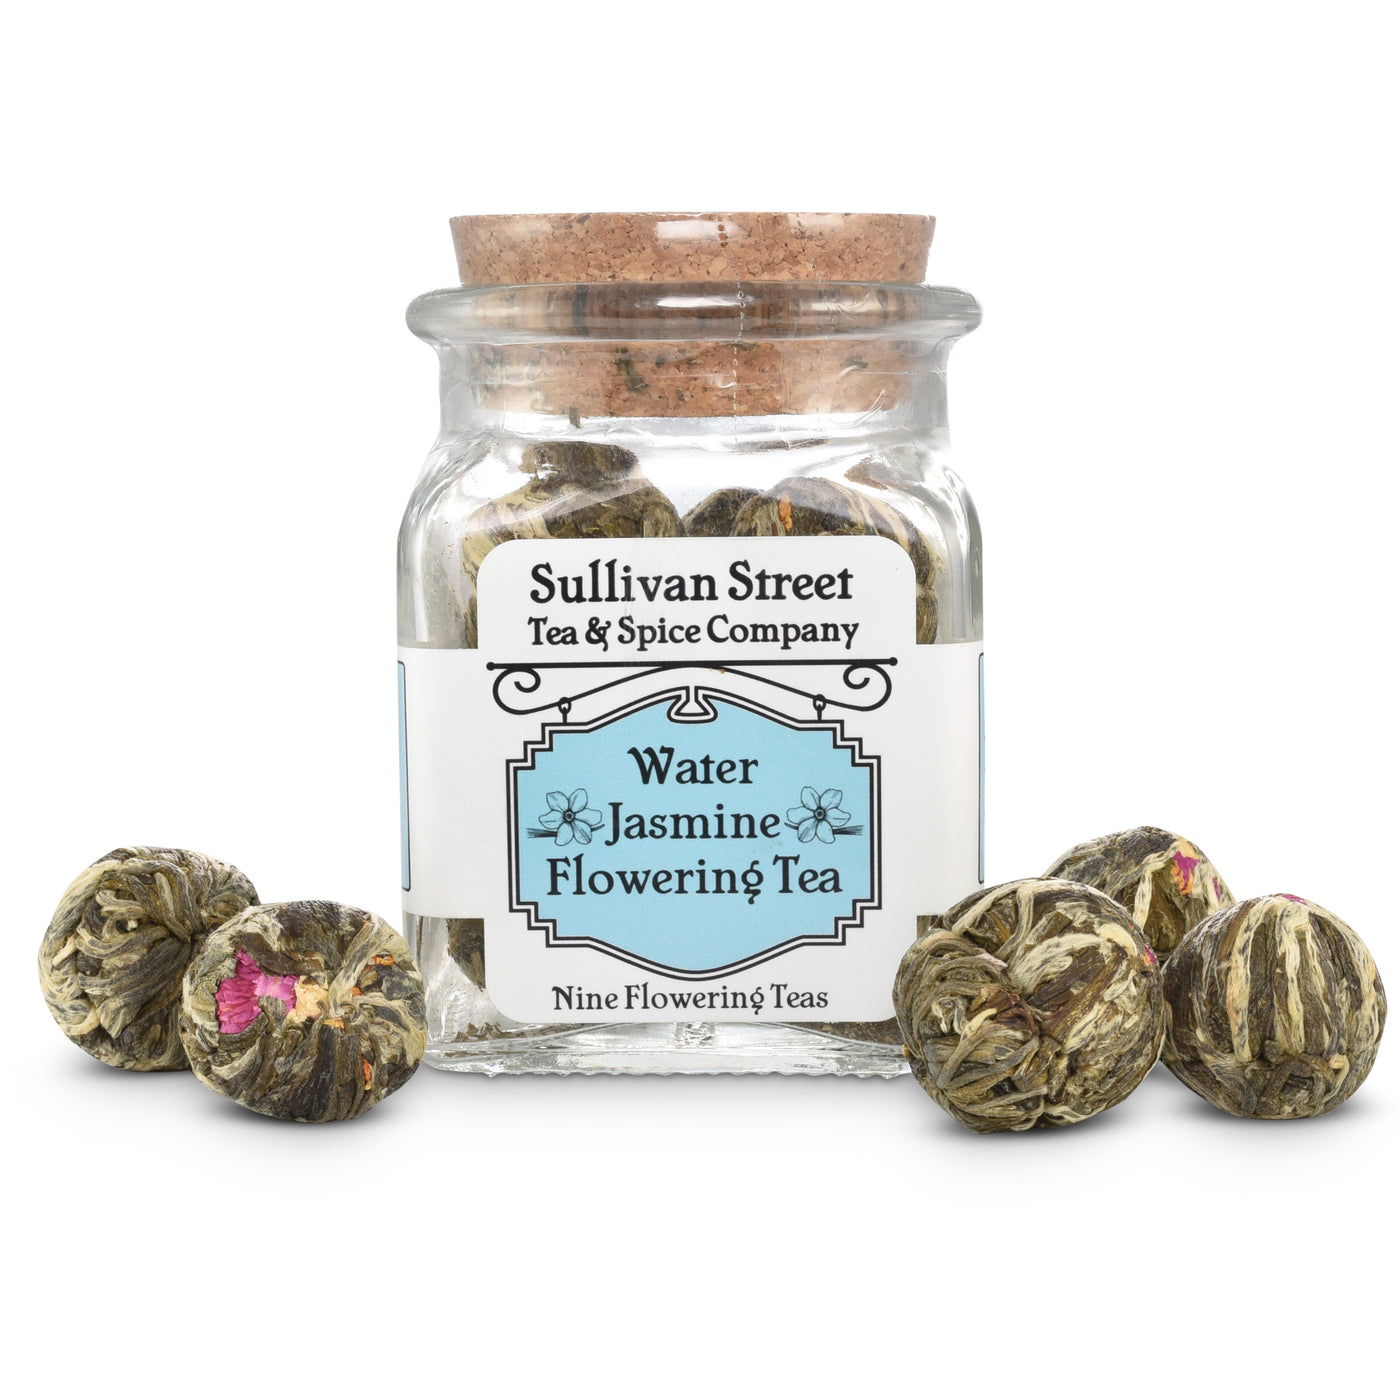 Water Jasmine Flowering Tea